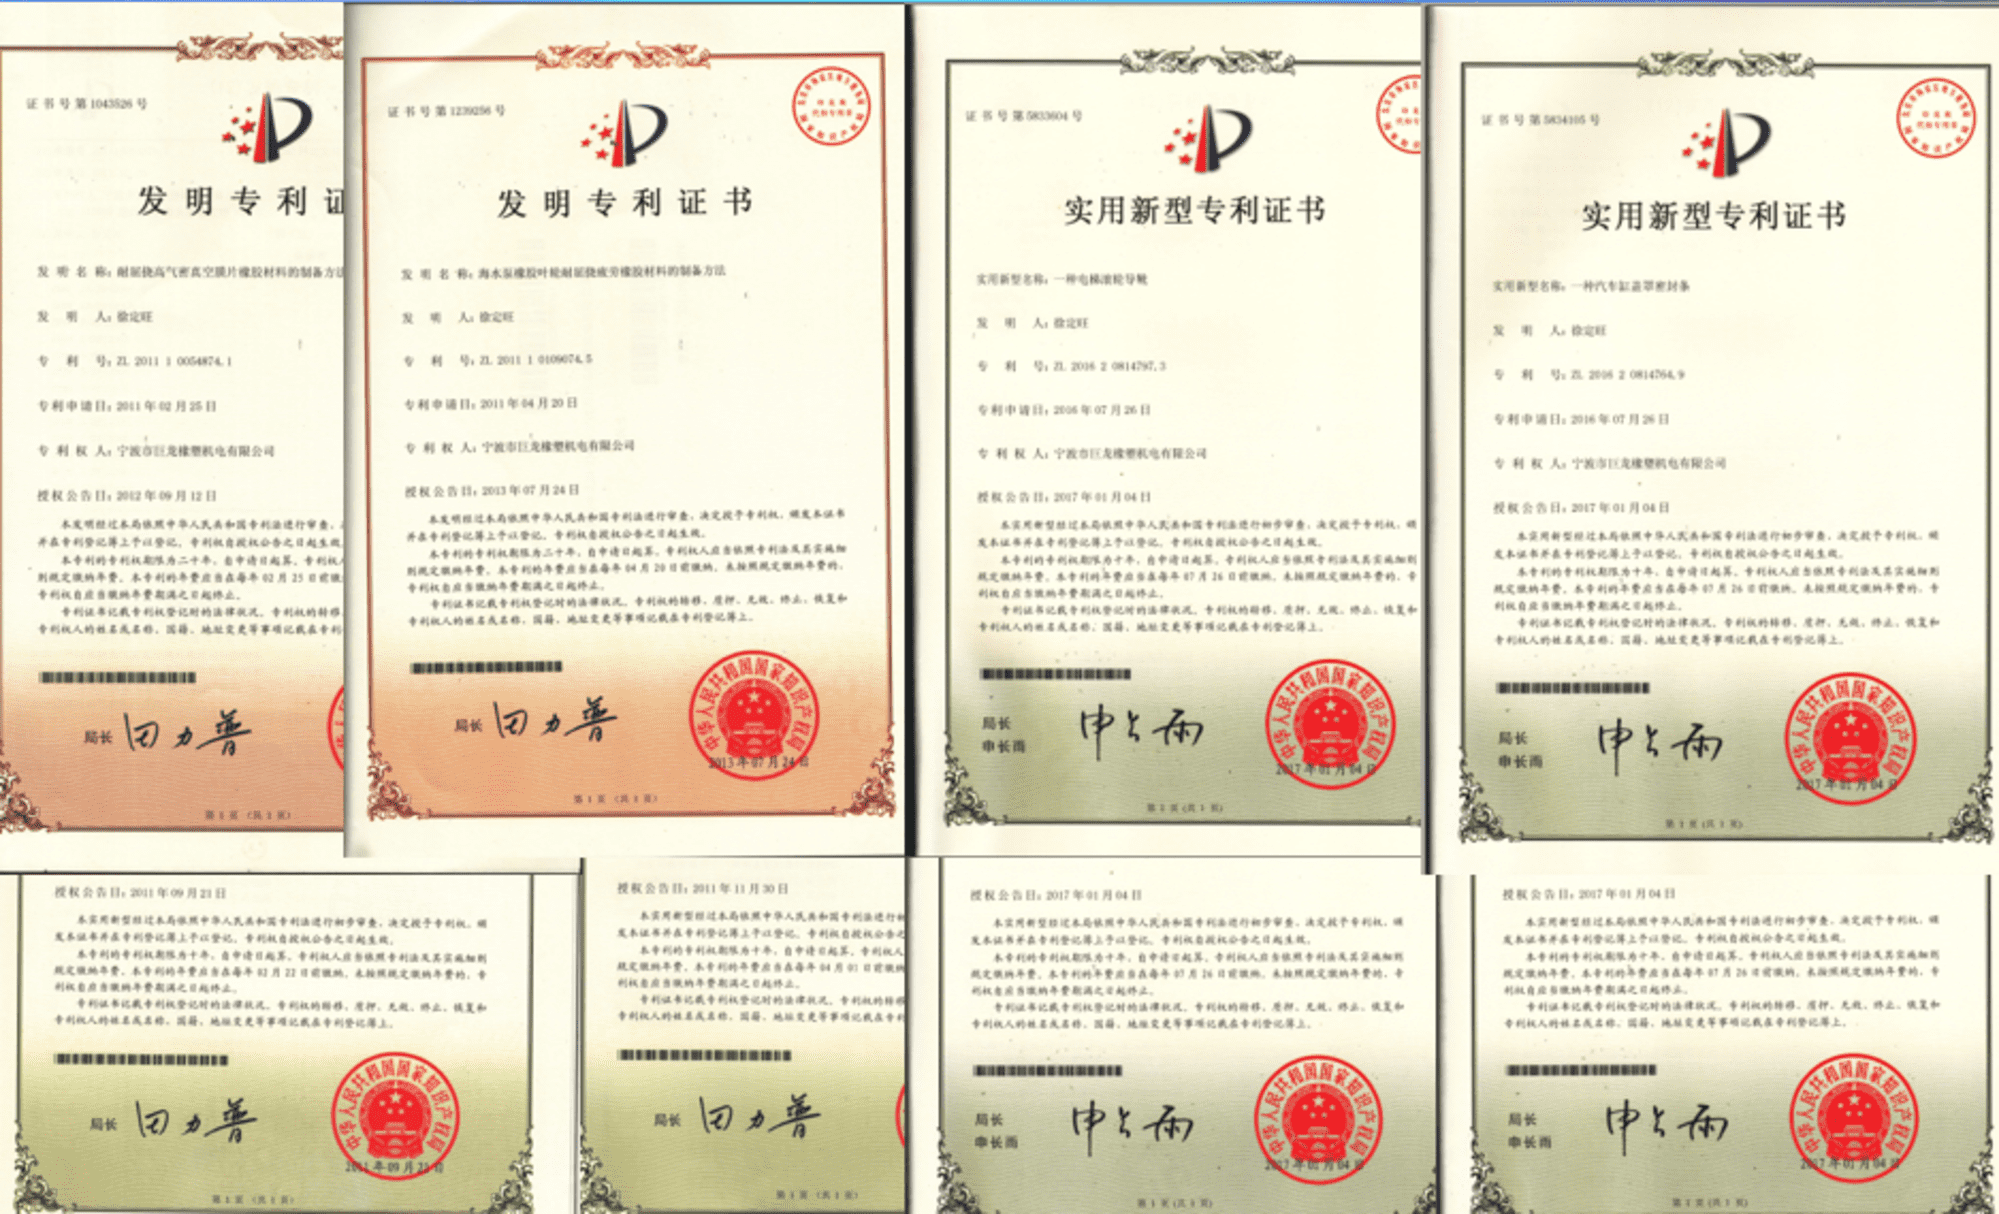 patent certificates